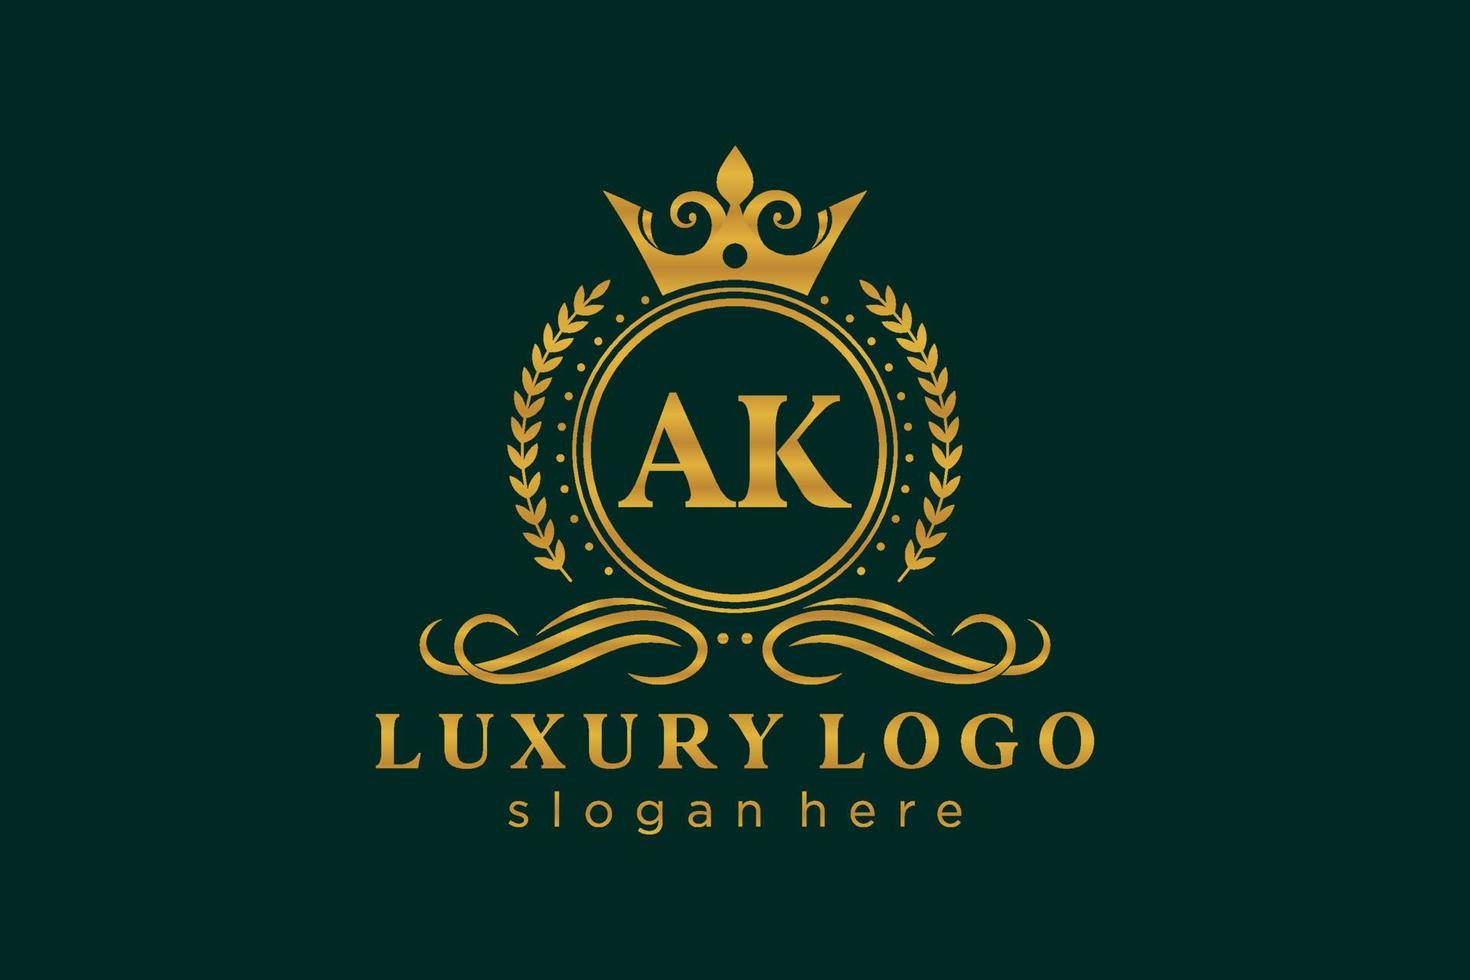 Royal Luxury Logo-Vorlage mit anfänglichem ak-Buchstaben in Vektorgrafiken für Restaurant, Lizenzgebühren, Boutique, Café, Hotel, Heraldik, Schmuck, Mode und andere Vektorillustrationen. vektor